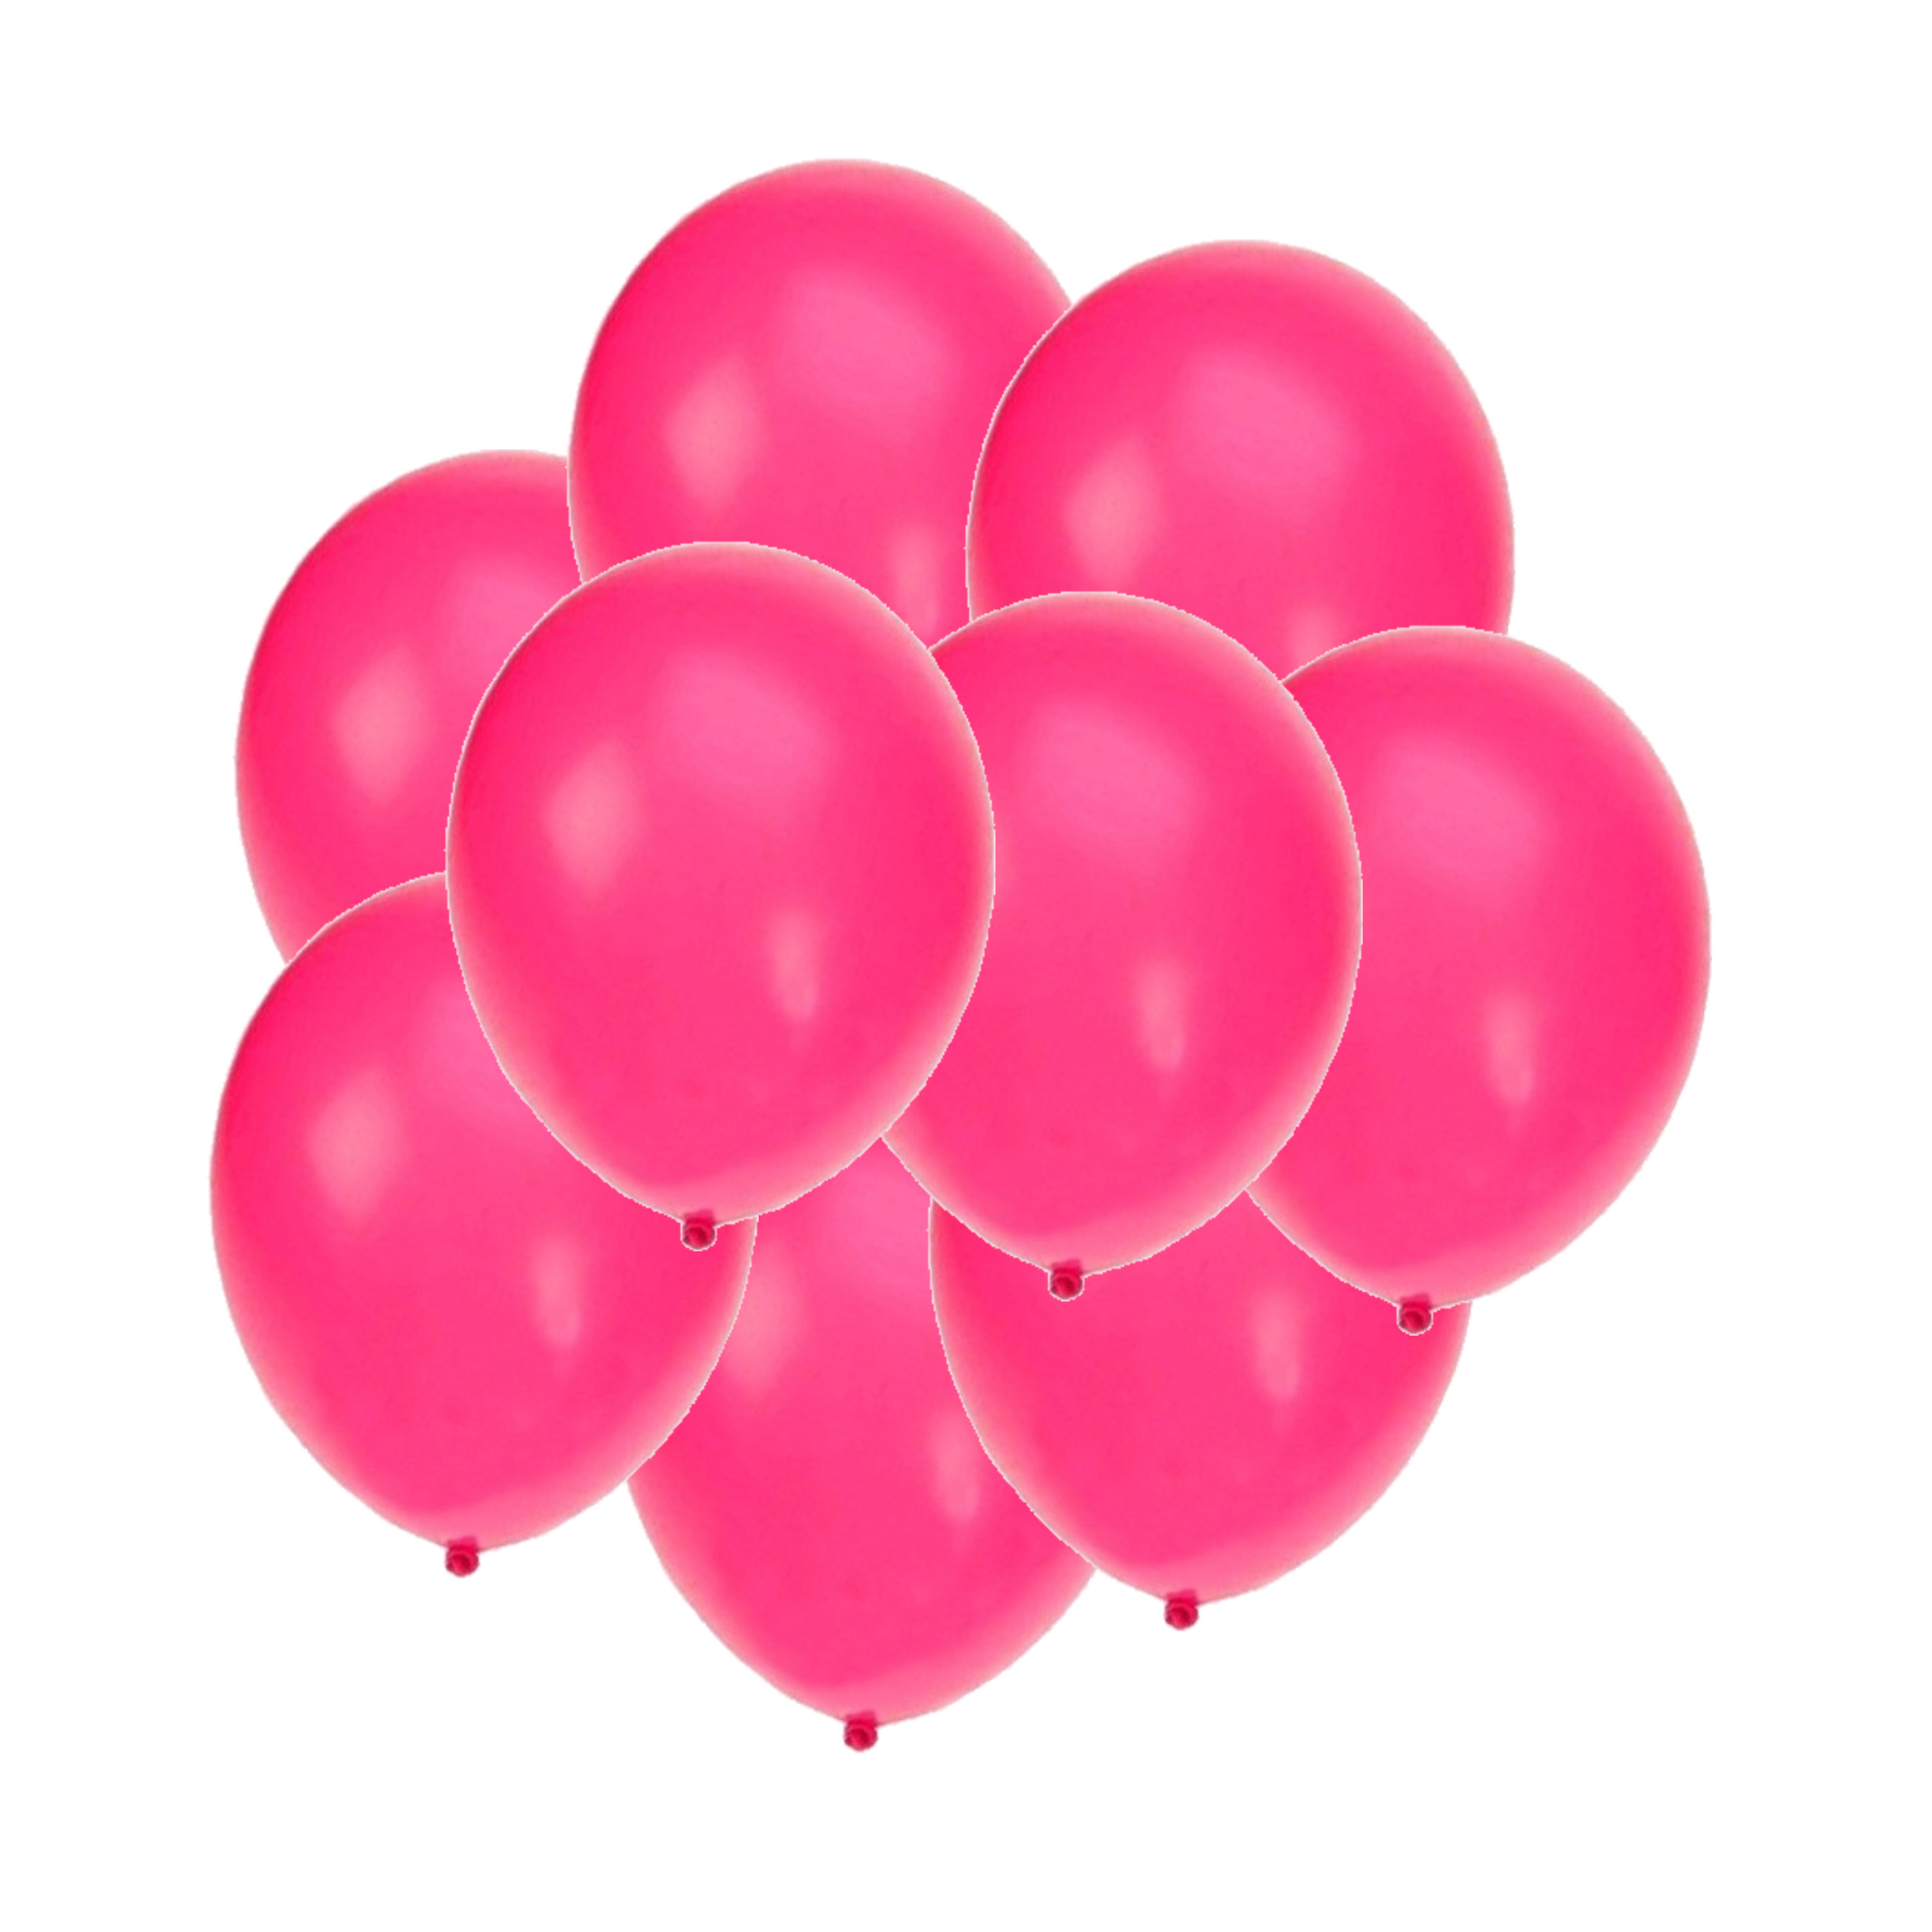 Bellatio decorations - Ballonnen knalroze/felroze 150x stuks rond 27 cm Top Merken Winkel